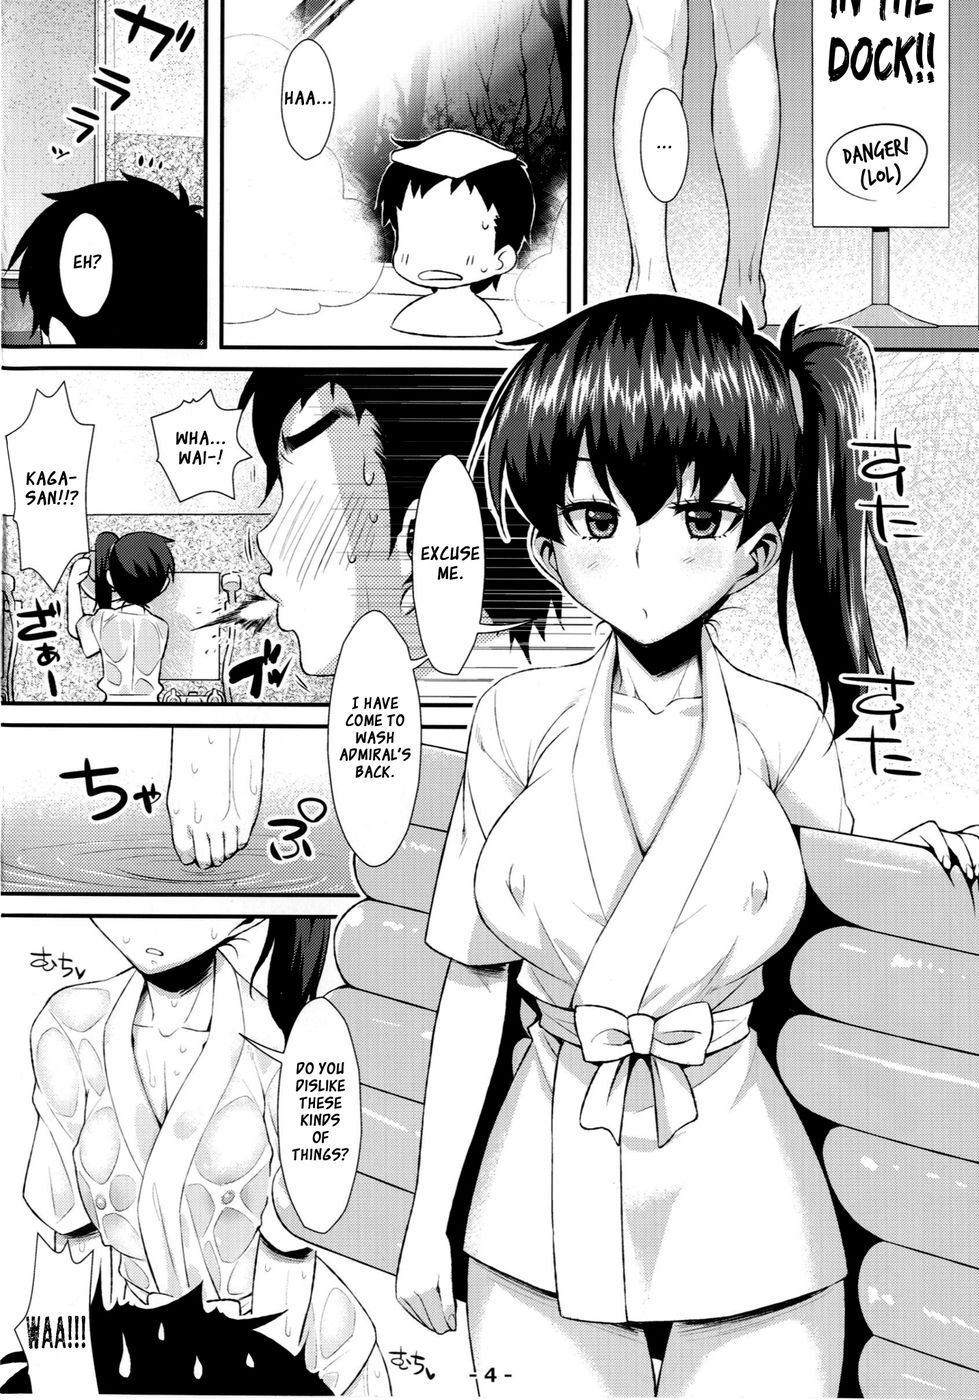 Hentai Manga Comic-Kaga Soap-Read-4